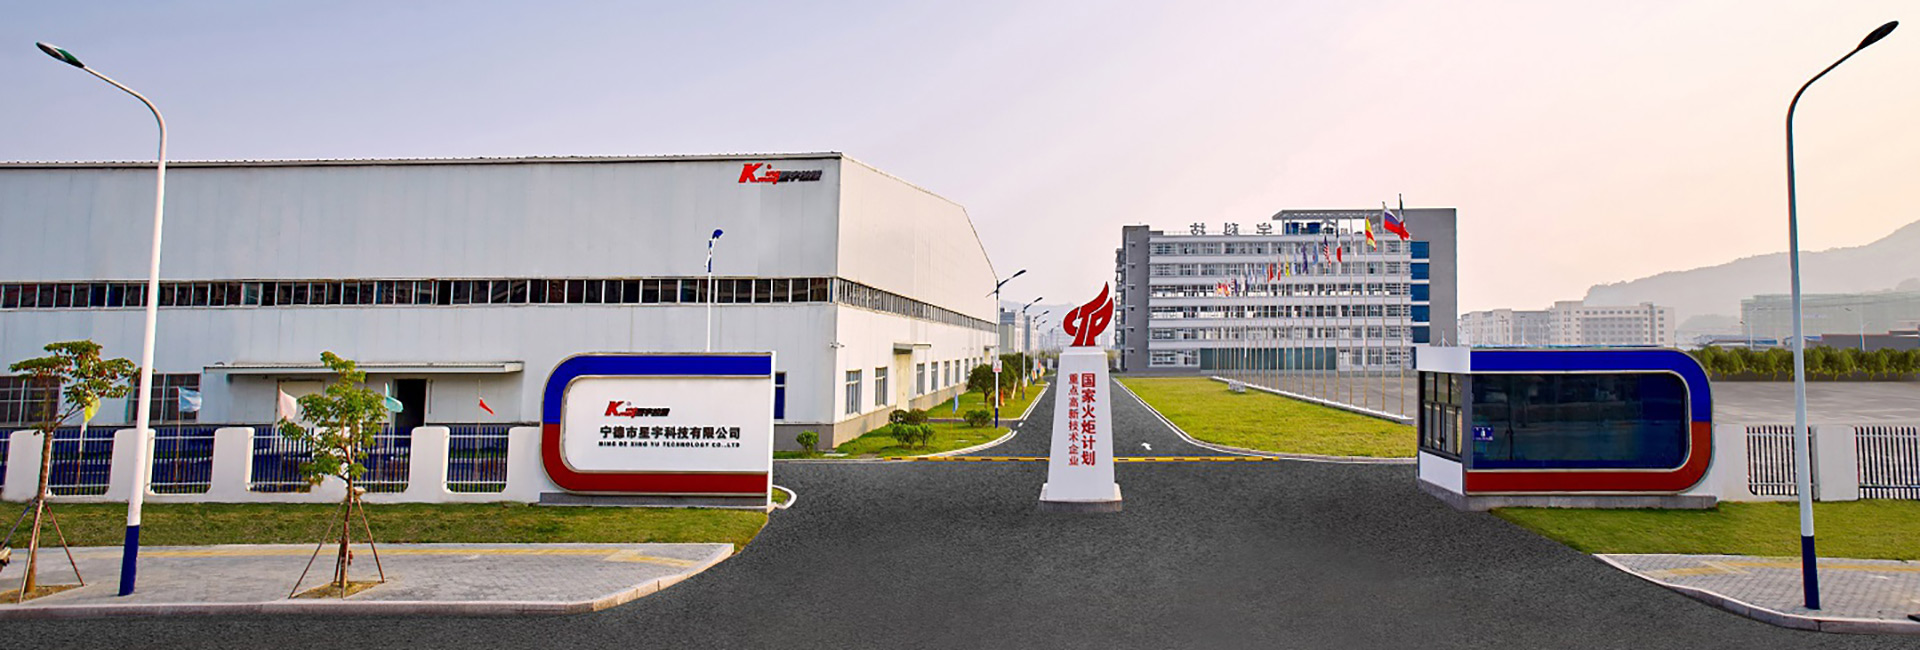 公司磁王商标已获福建省著名商标,目前正积极申报中国驰名商标